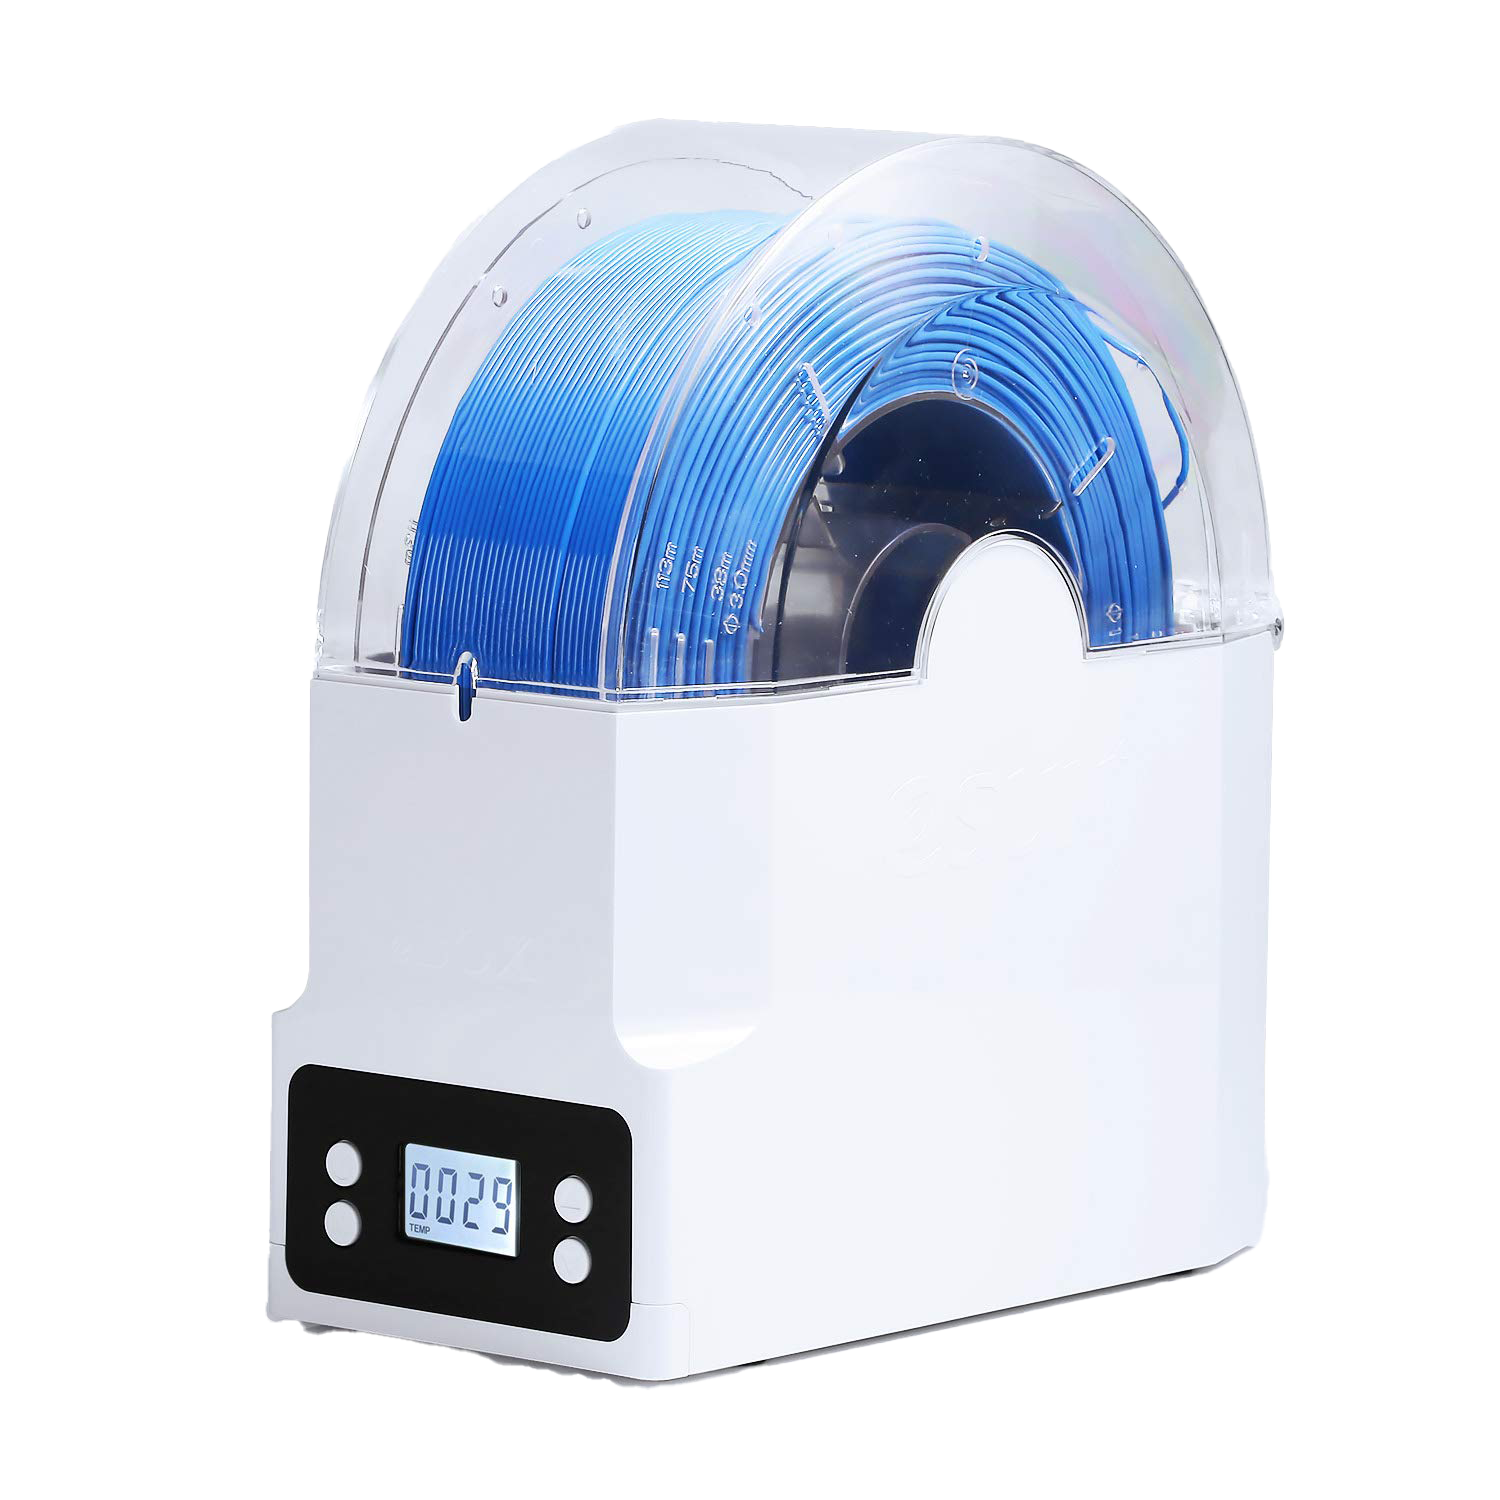 Boite de stockage de filaments eSUN eBOX Esun Esun_eBox : Machines-3D, N°1  distributeur europeen pour meilleures imprimantes 3D, scanners 3D,  équipement Fablab, consommables, accessoires